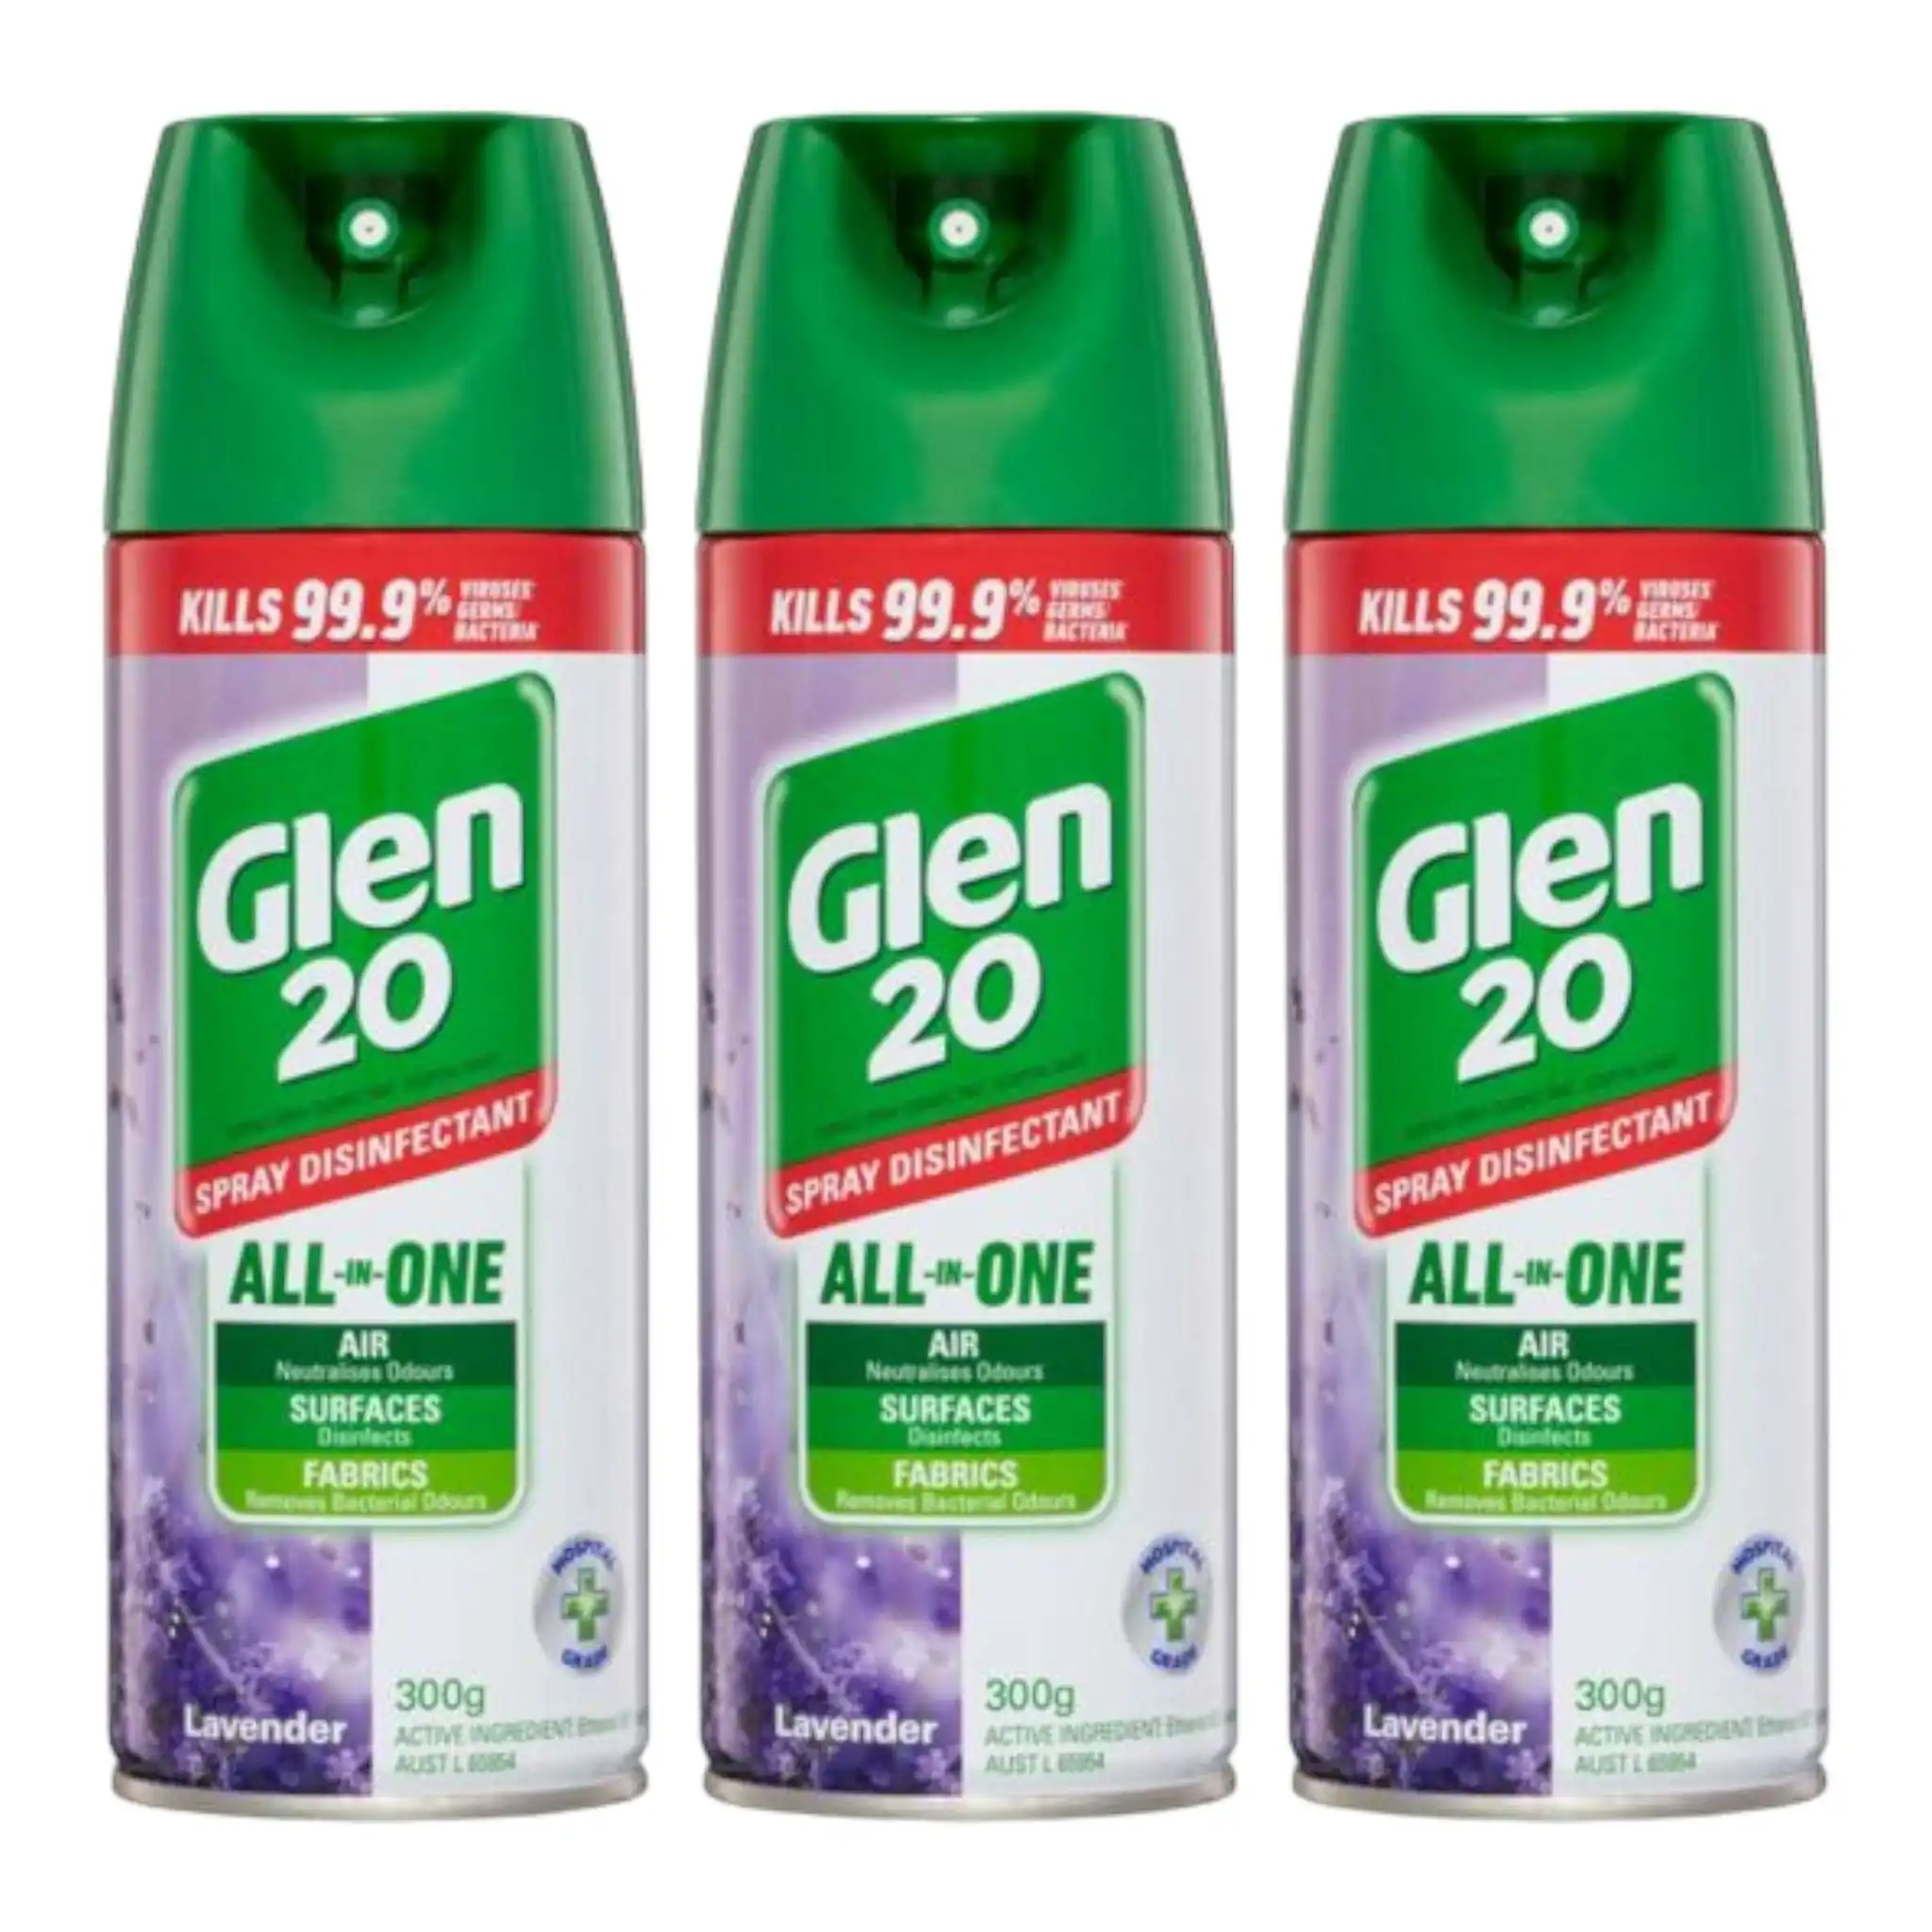 3 Pack Glen 20 Disinfectant Spray Lavender 300g